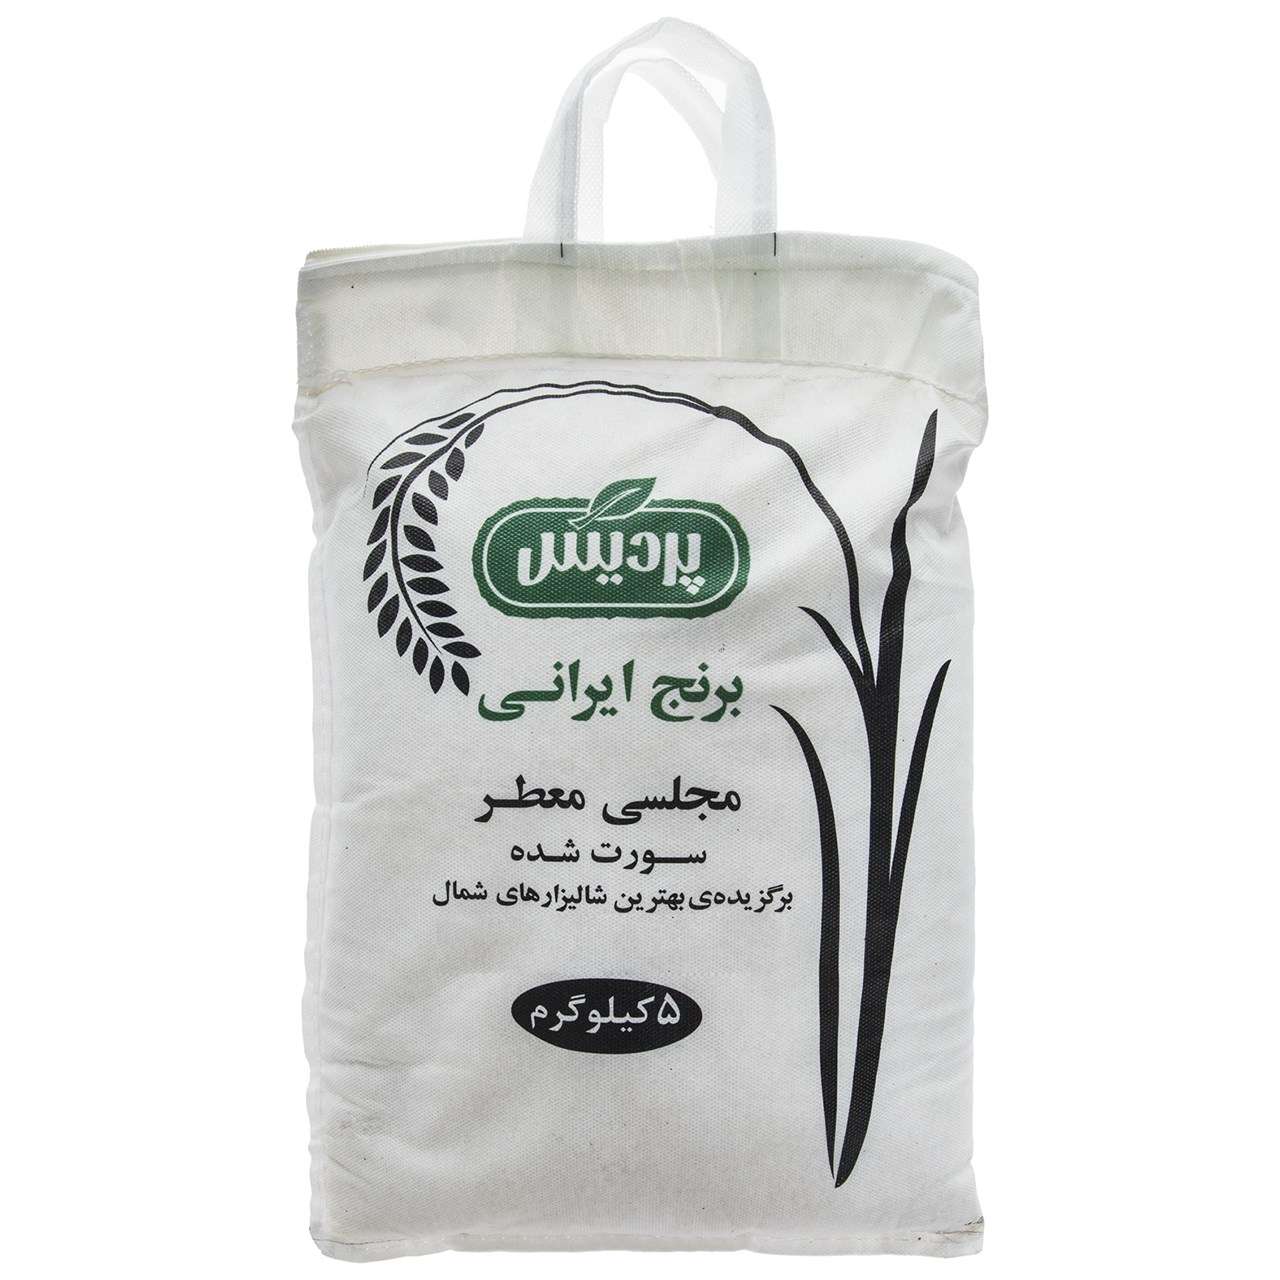 نکته خرید - قیمت روز برنج ایرانی پردیس مقدار 5 کیلوگرم خرید